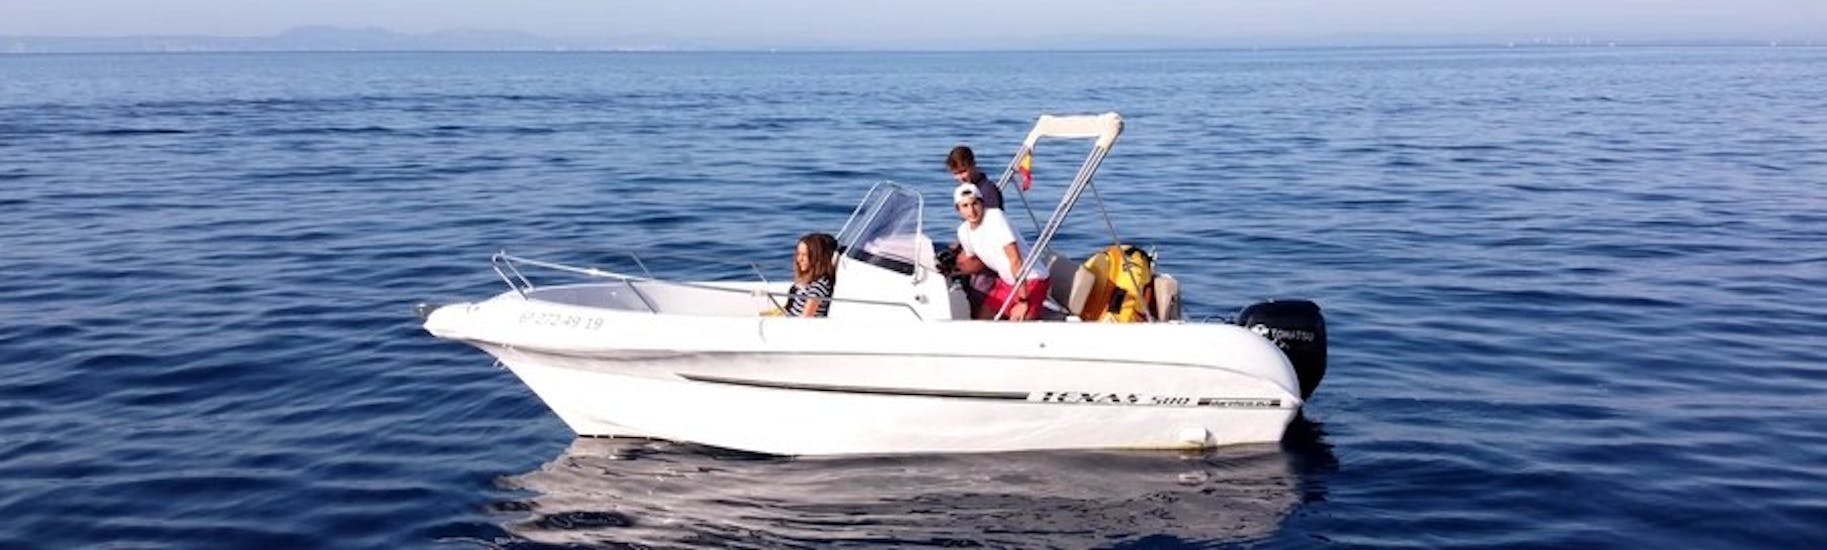 Il moderno motoscafo TEXAS 580 con un gruppo di partecipanti che si divertono navigando sulle acque turchesi della baia delle rose durante il noleggio barca in Costa Brava per un massimo di 6 persone con patente con Maxi Boats Costa Brava.